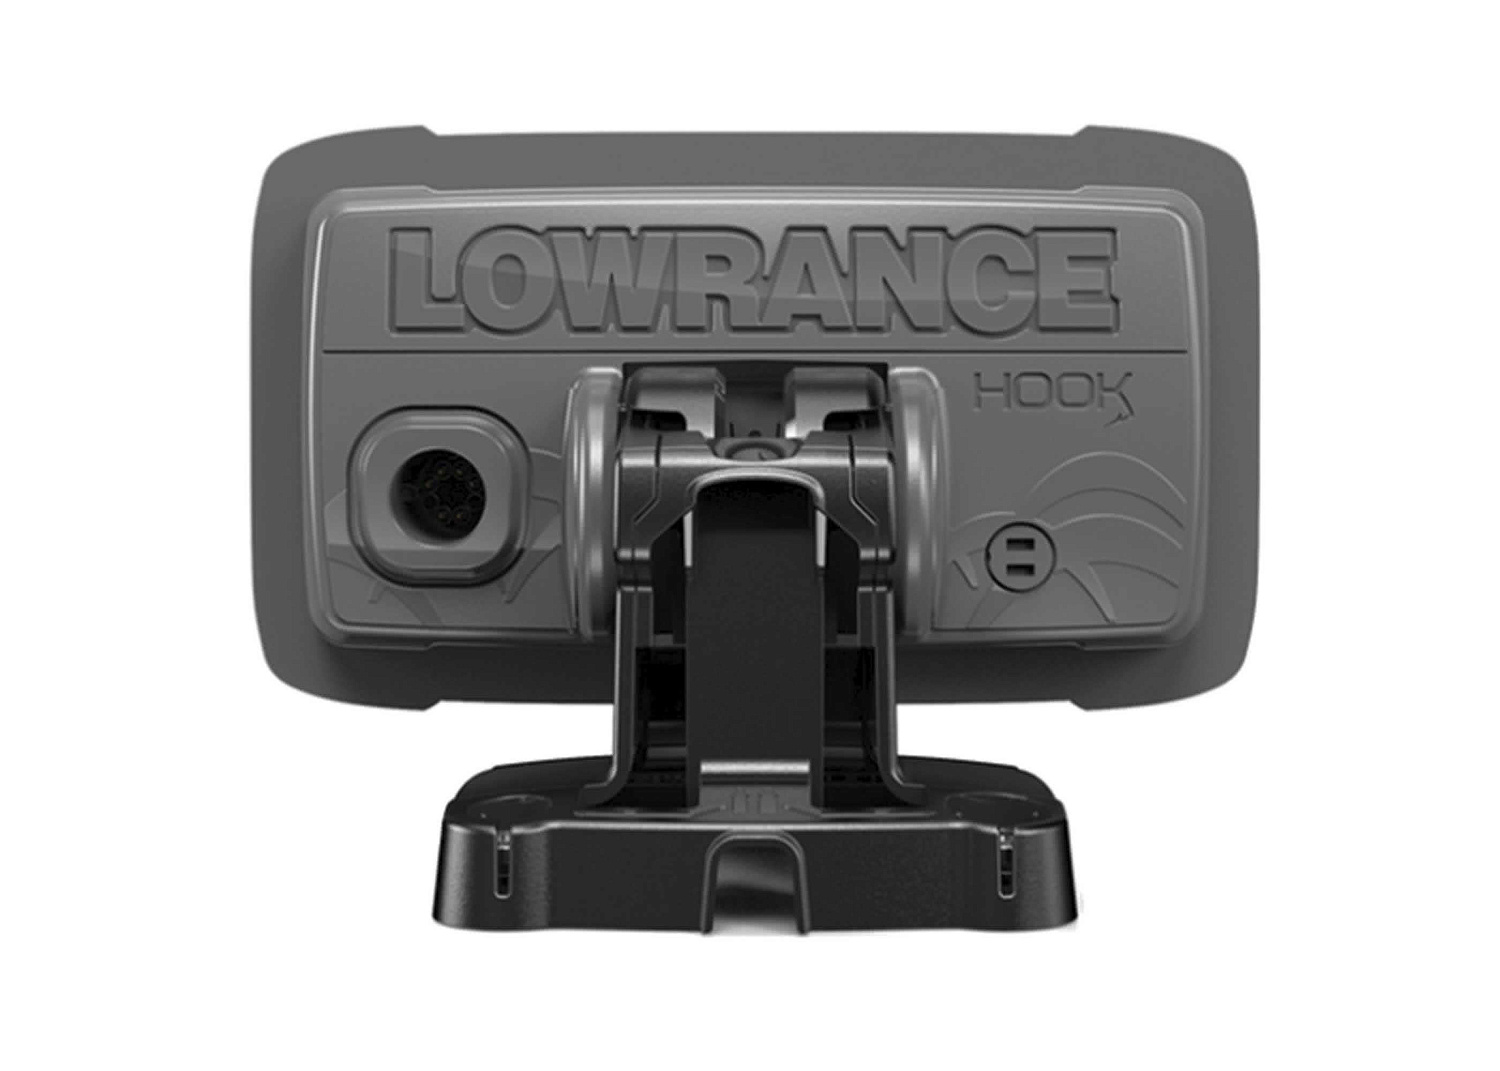 Lowrance Fishfinder Hook²-4x Bullet GPS